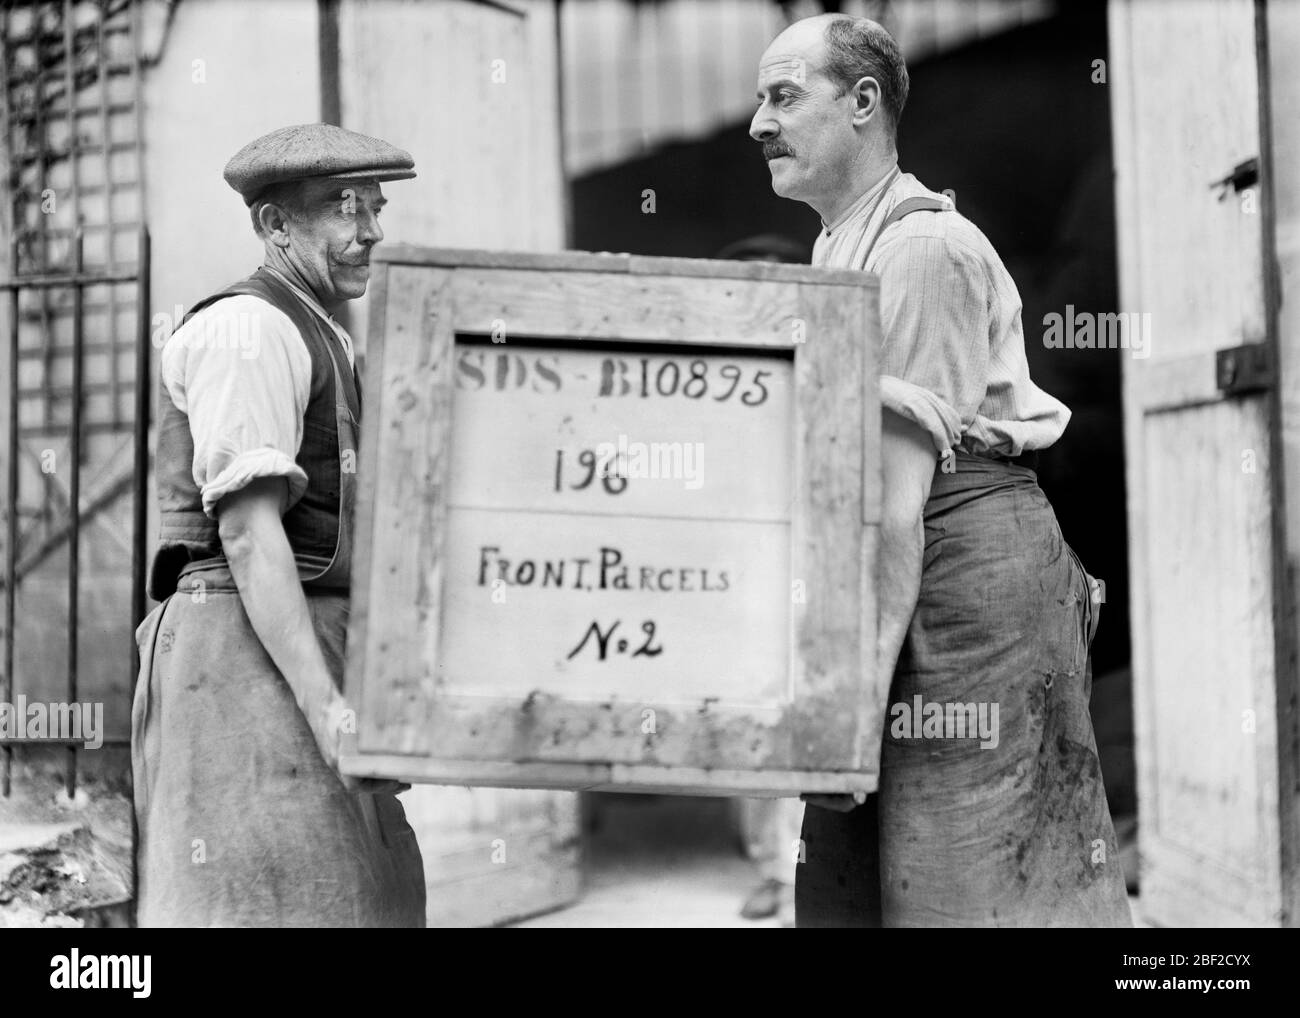 Zwei Männer mit einer Kiste mit Zubehör des amerikanischen Roten Kreuzes mit der Aufschrift "Front Parcels", die an die Front Lines of war, Frankreich, Lewis Wickes Hine, Photographensammlung des amerikanischen Roten Kreuzes, Juli 1918, geliefert werden soll Stockfoto